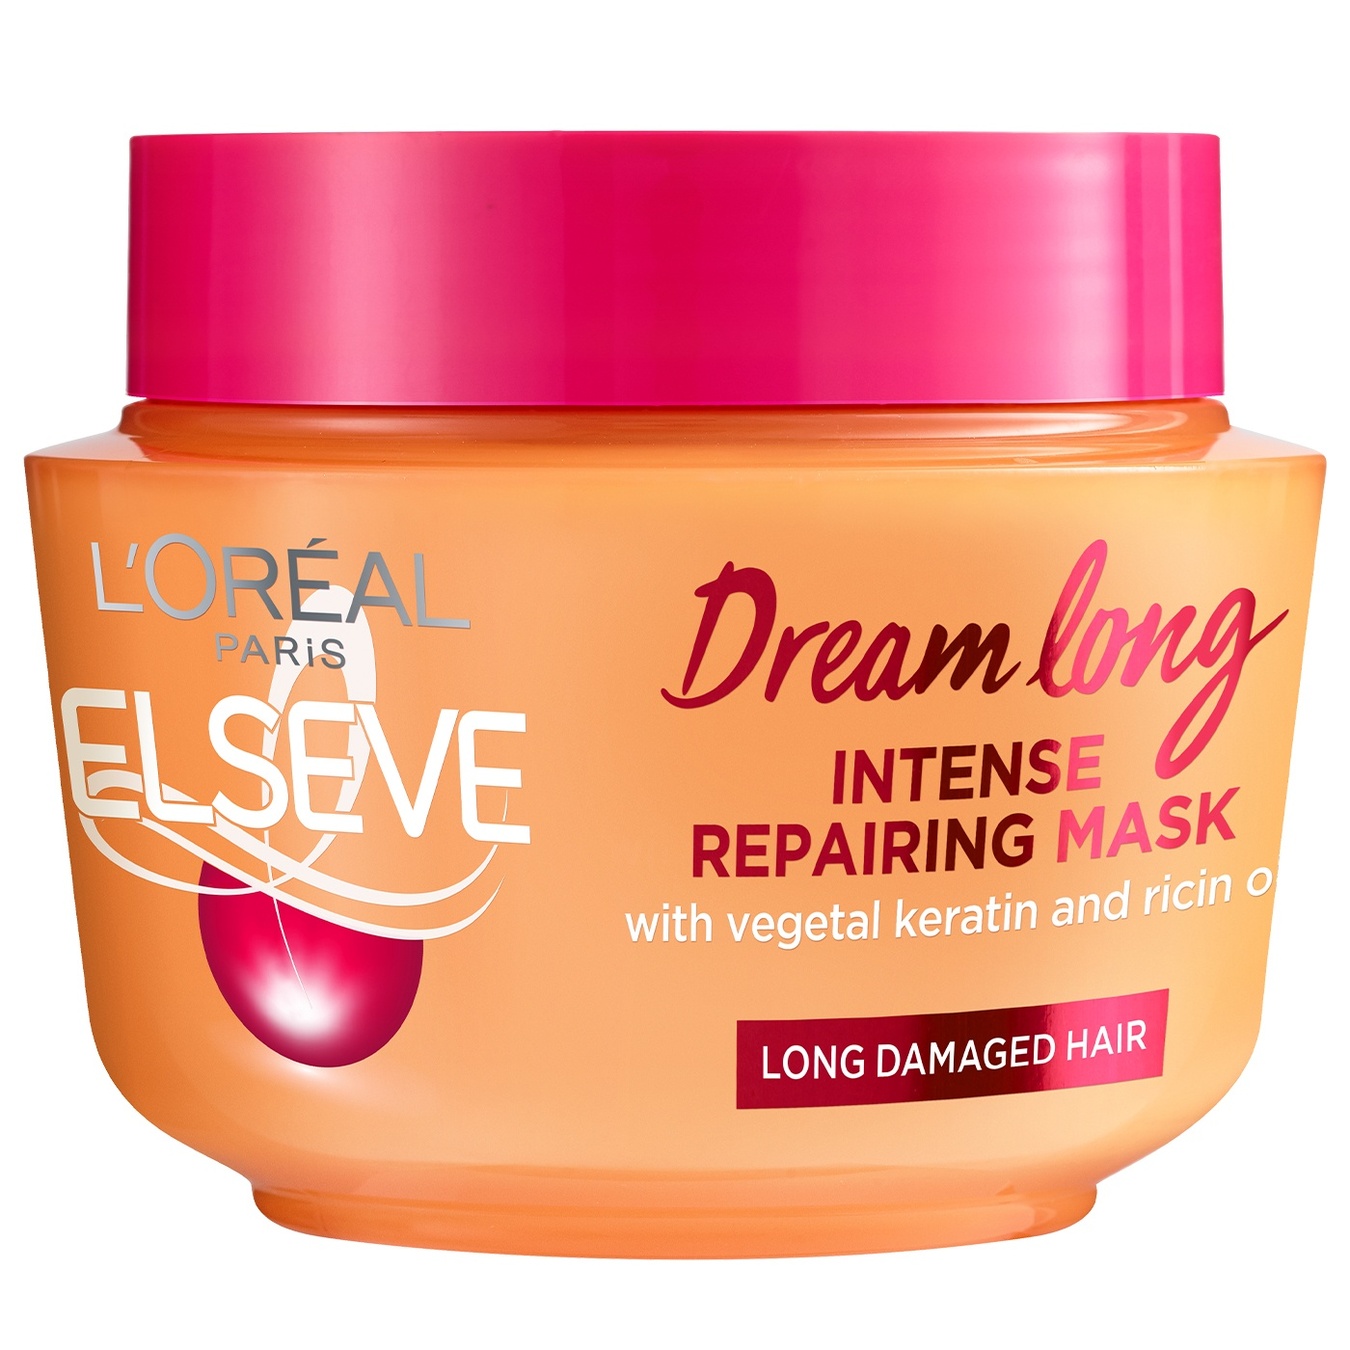 Elseve Dream Long mask for long damaged hair 300 ml